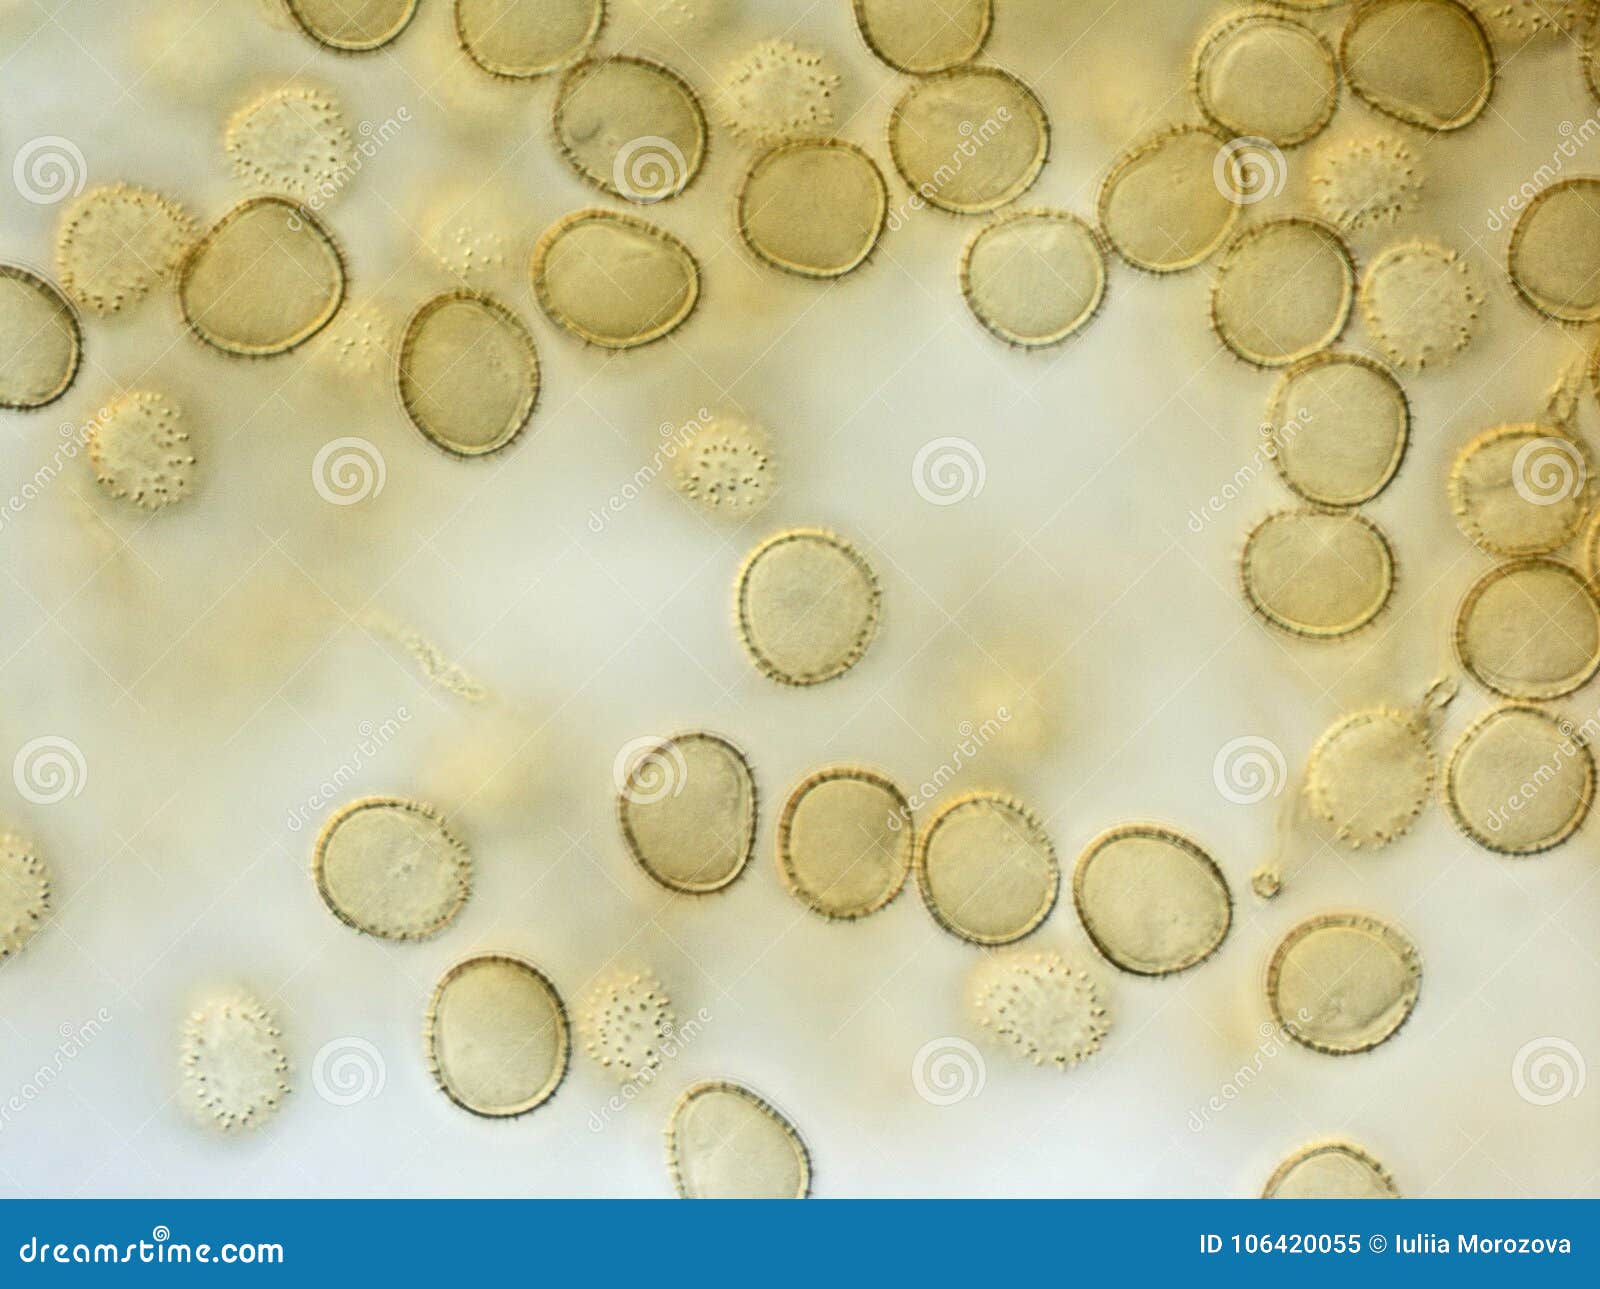 孢子电镜扫描之一-大型真菌-图片